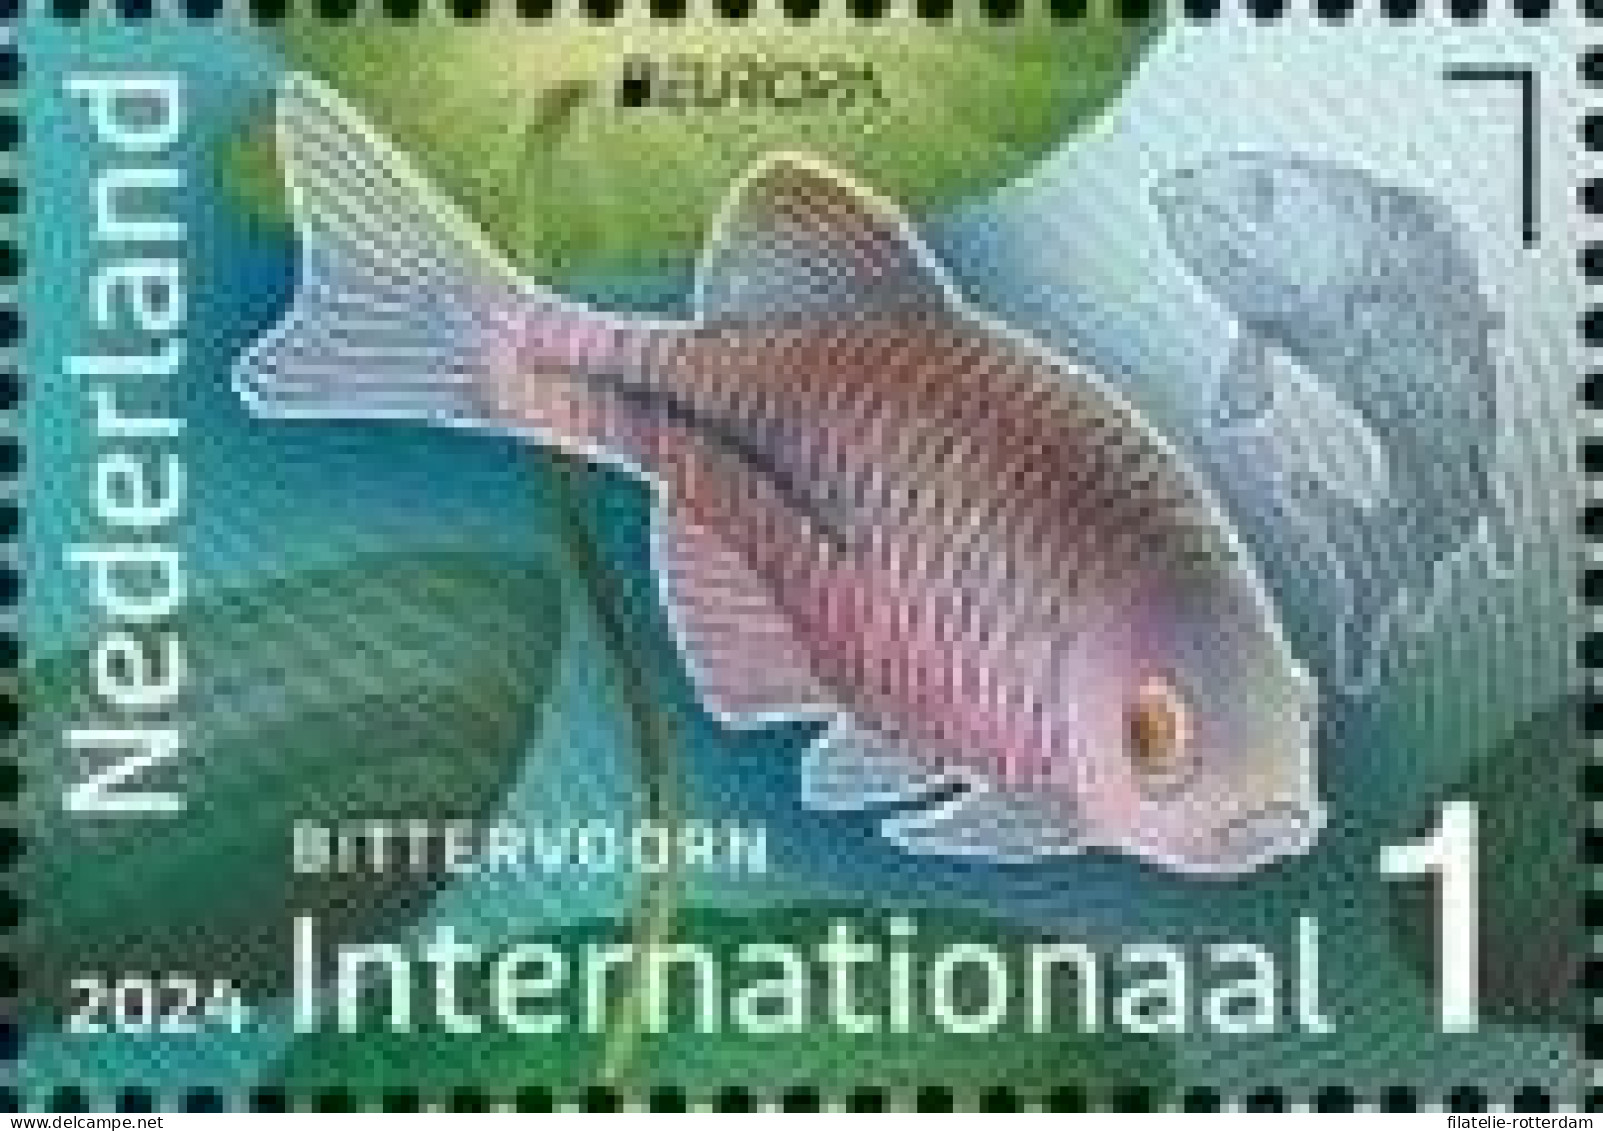 The Netherlands / Nederland - Postfris / MNH - Europa, Underwater World 2024 - Nuevos